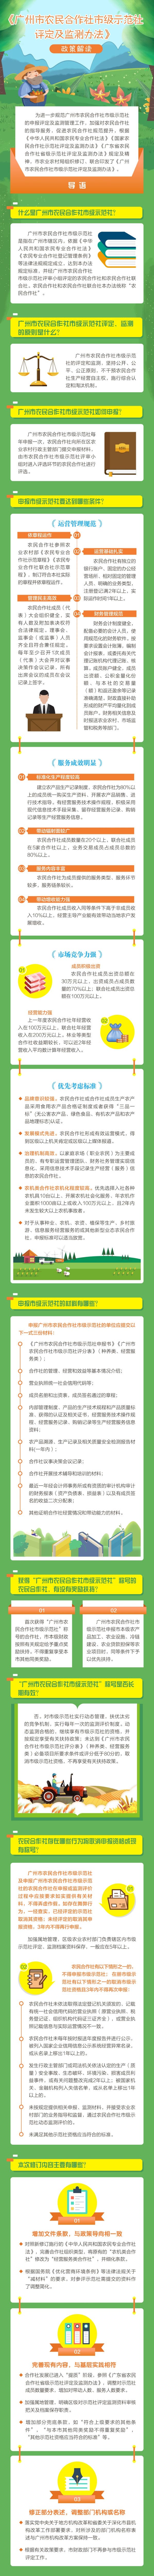 （0701以此为准）《广州市农民合作社市级示范社评定及监测办法》政策解读图文材料.bmp